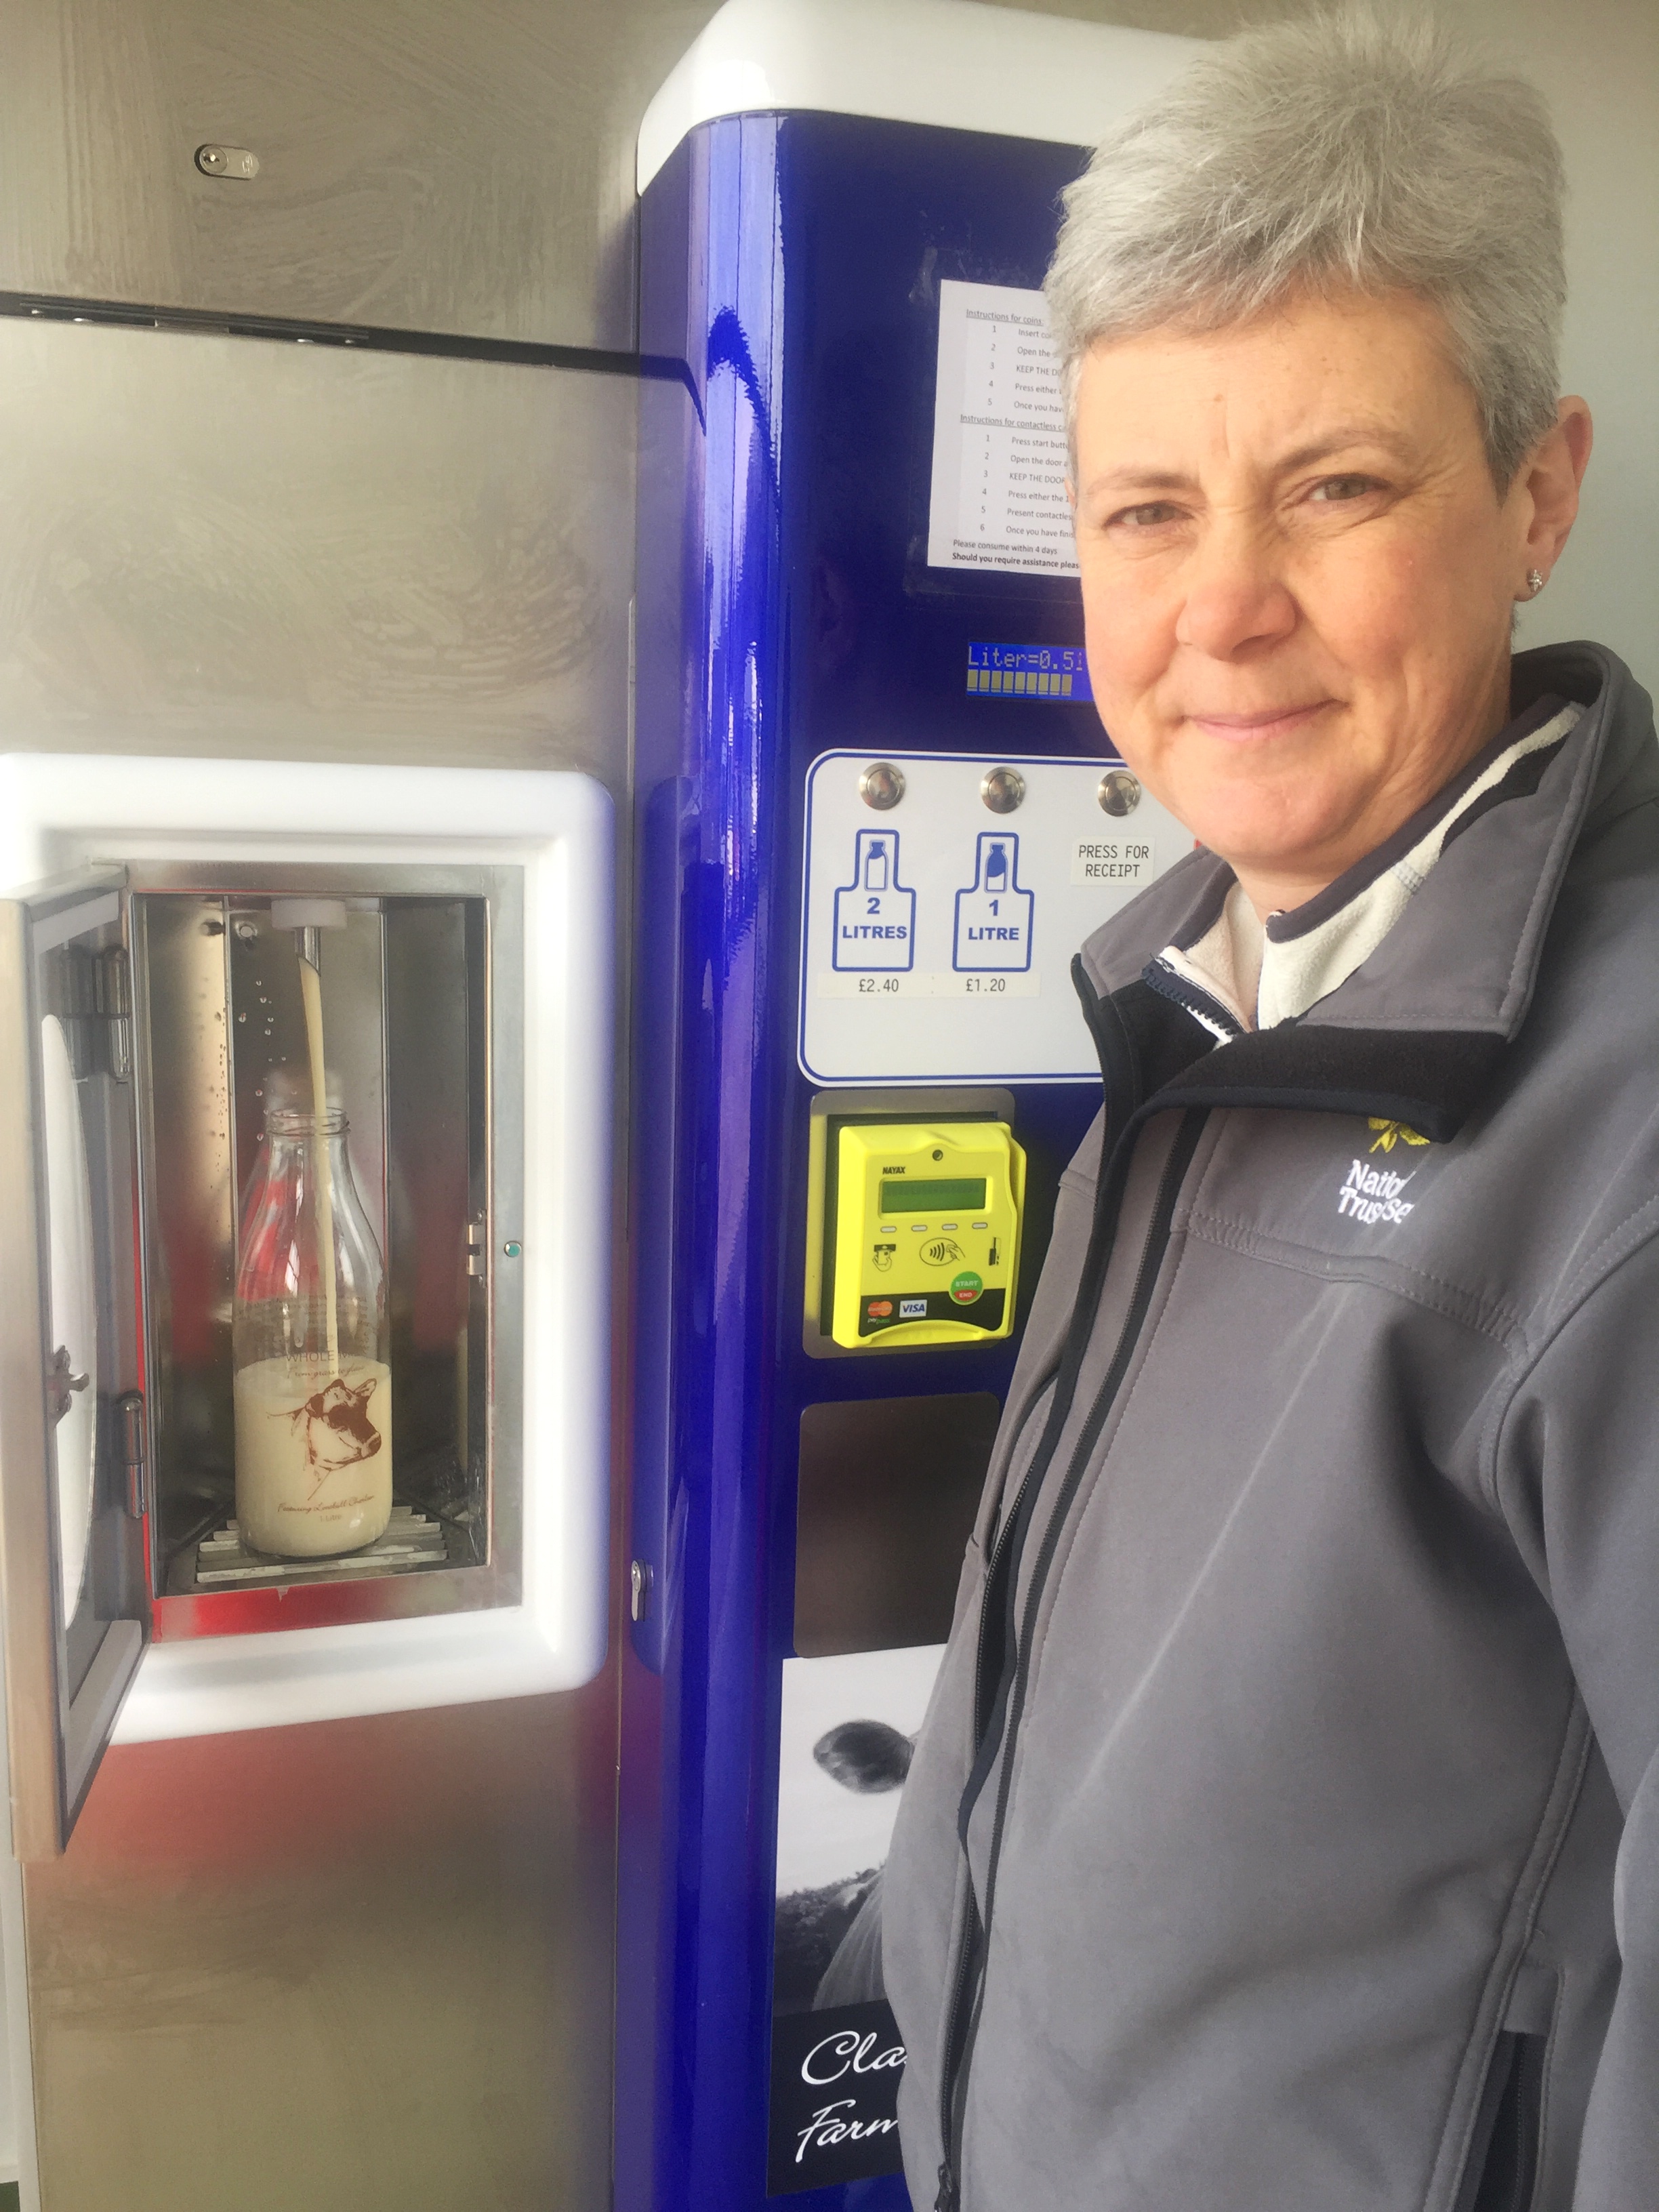 Classic Herd launches milk vending machine